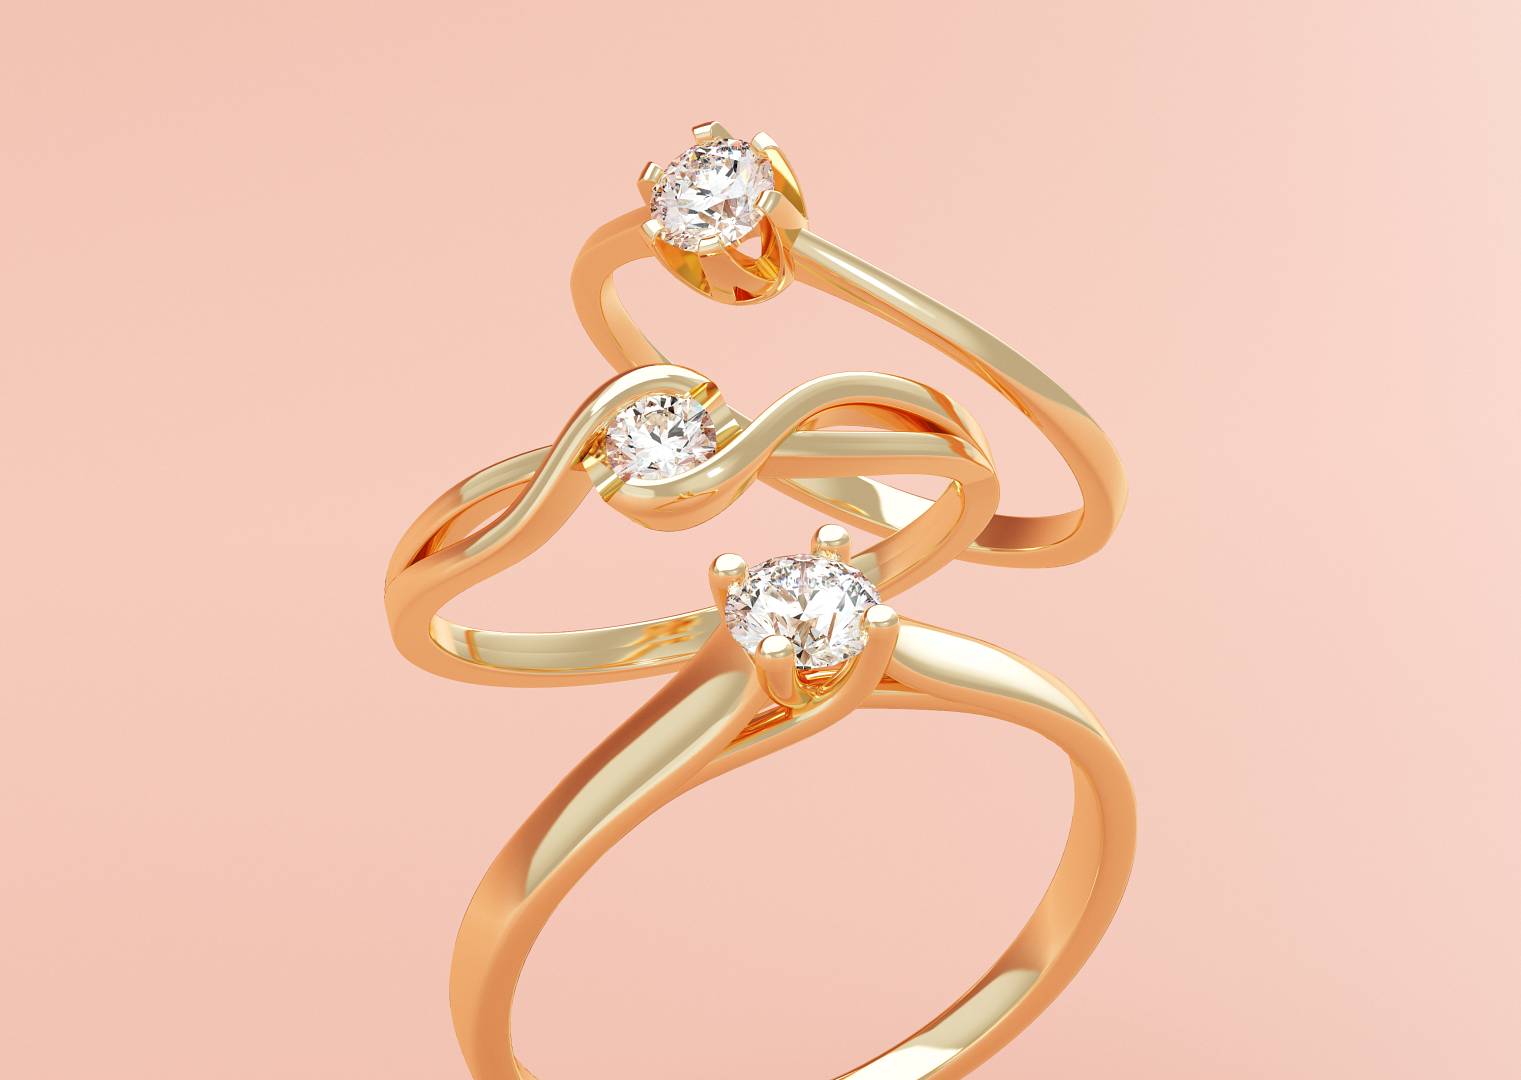 Znajdź idealny symbol miłości. Wybierz pierścionek zaręczynowy i rozłóż koszty!